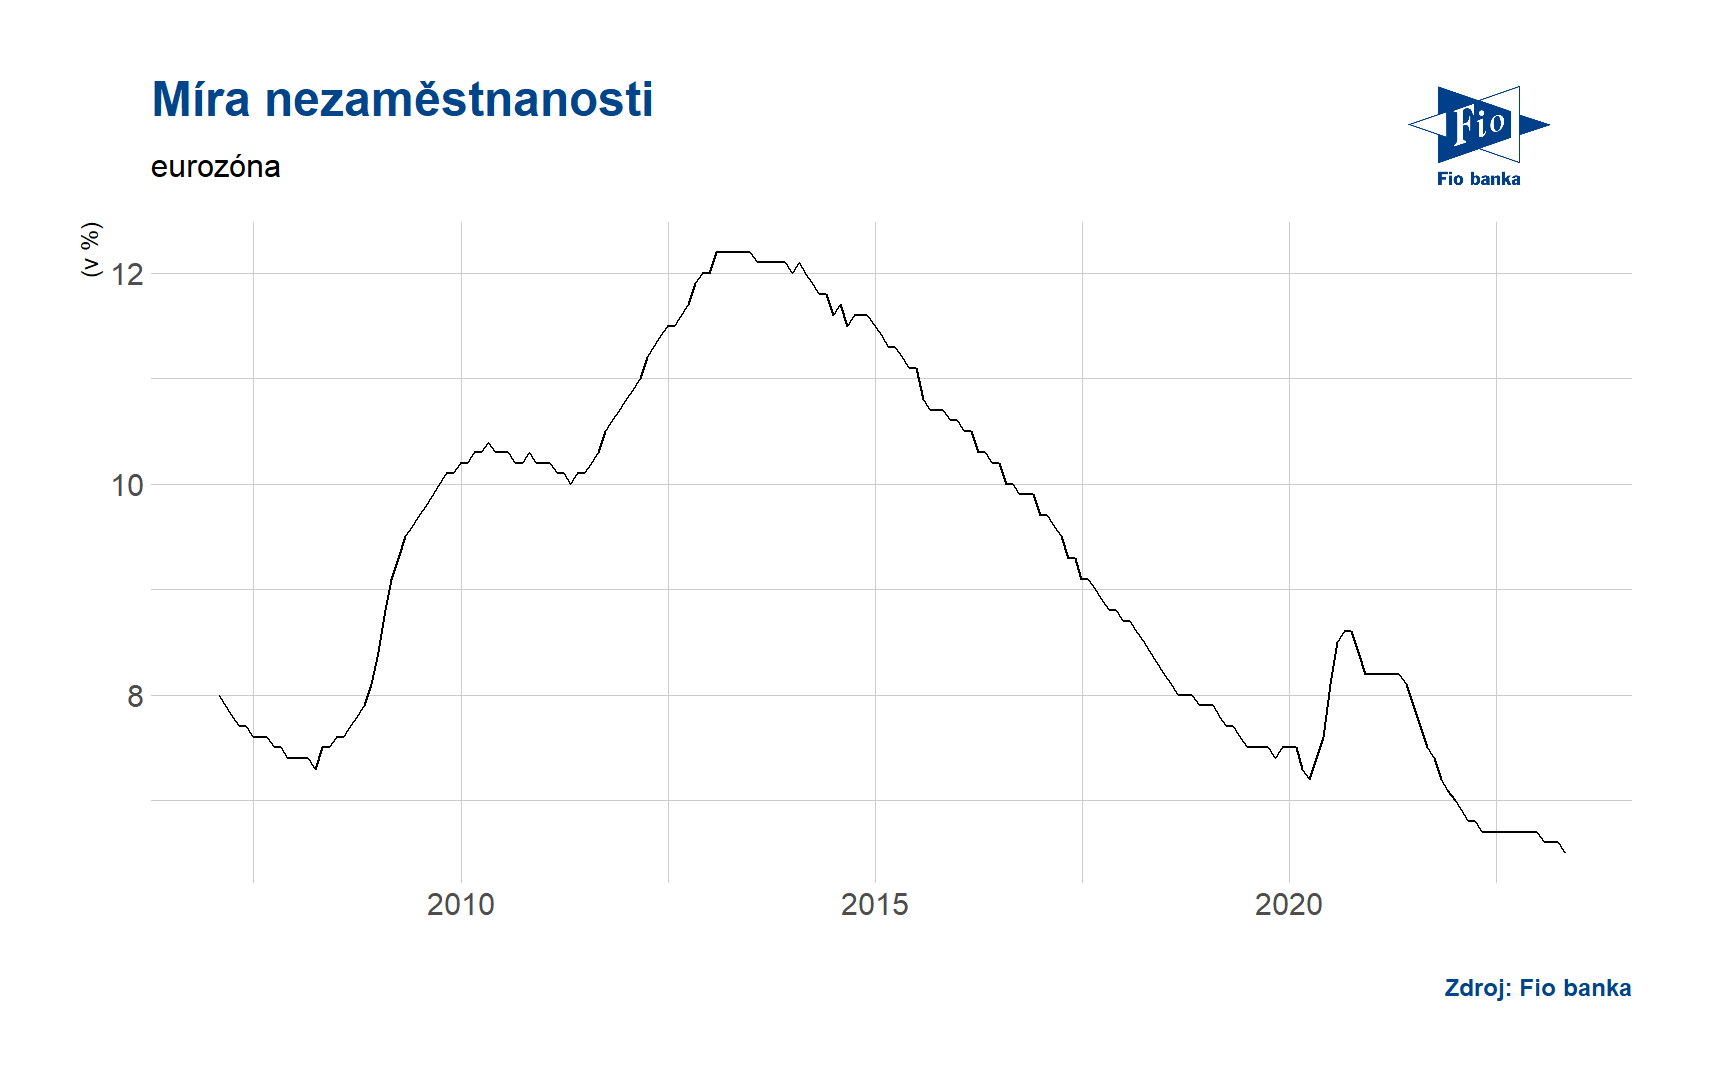 Míra nezaměstnanosti v eurozóně